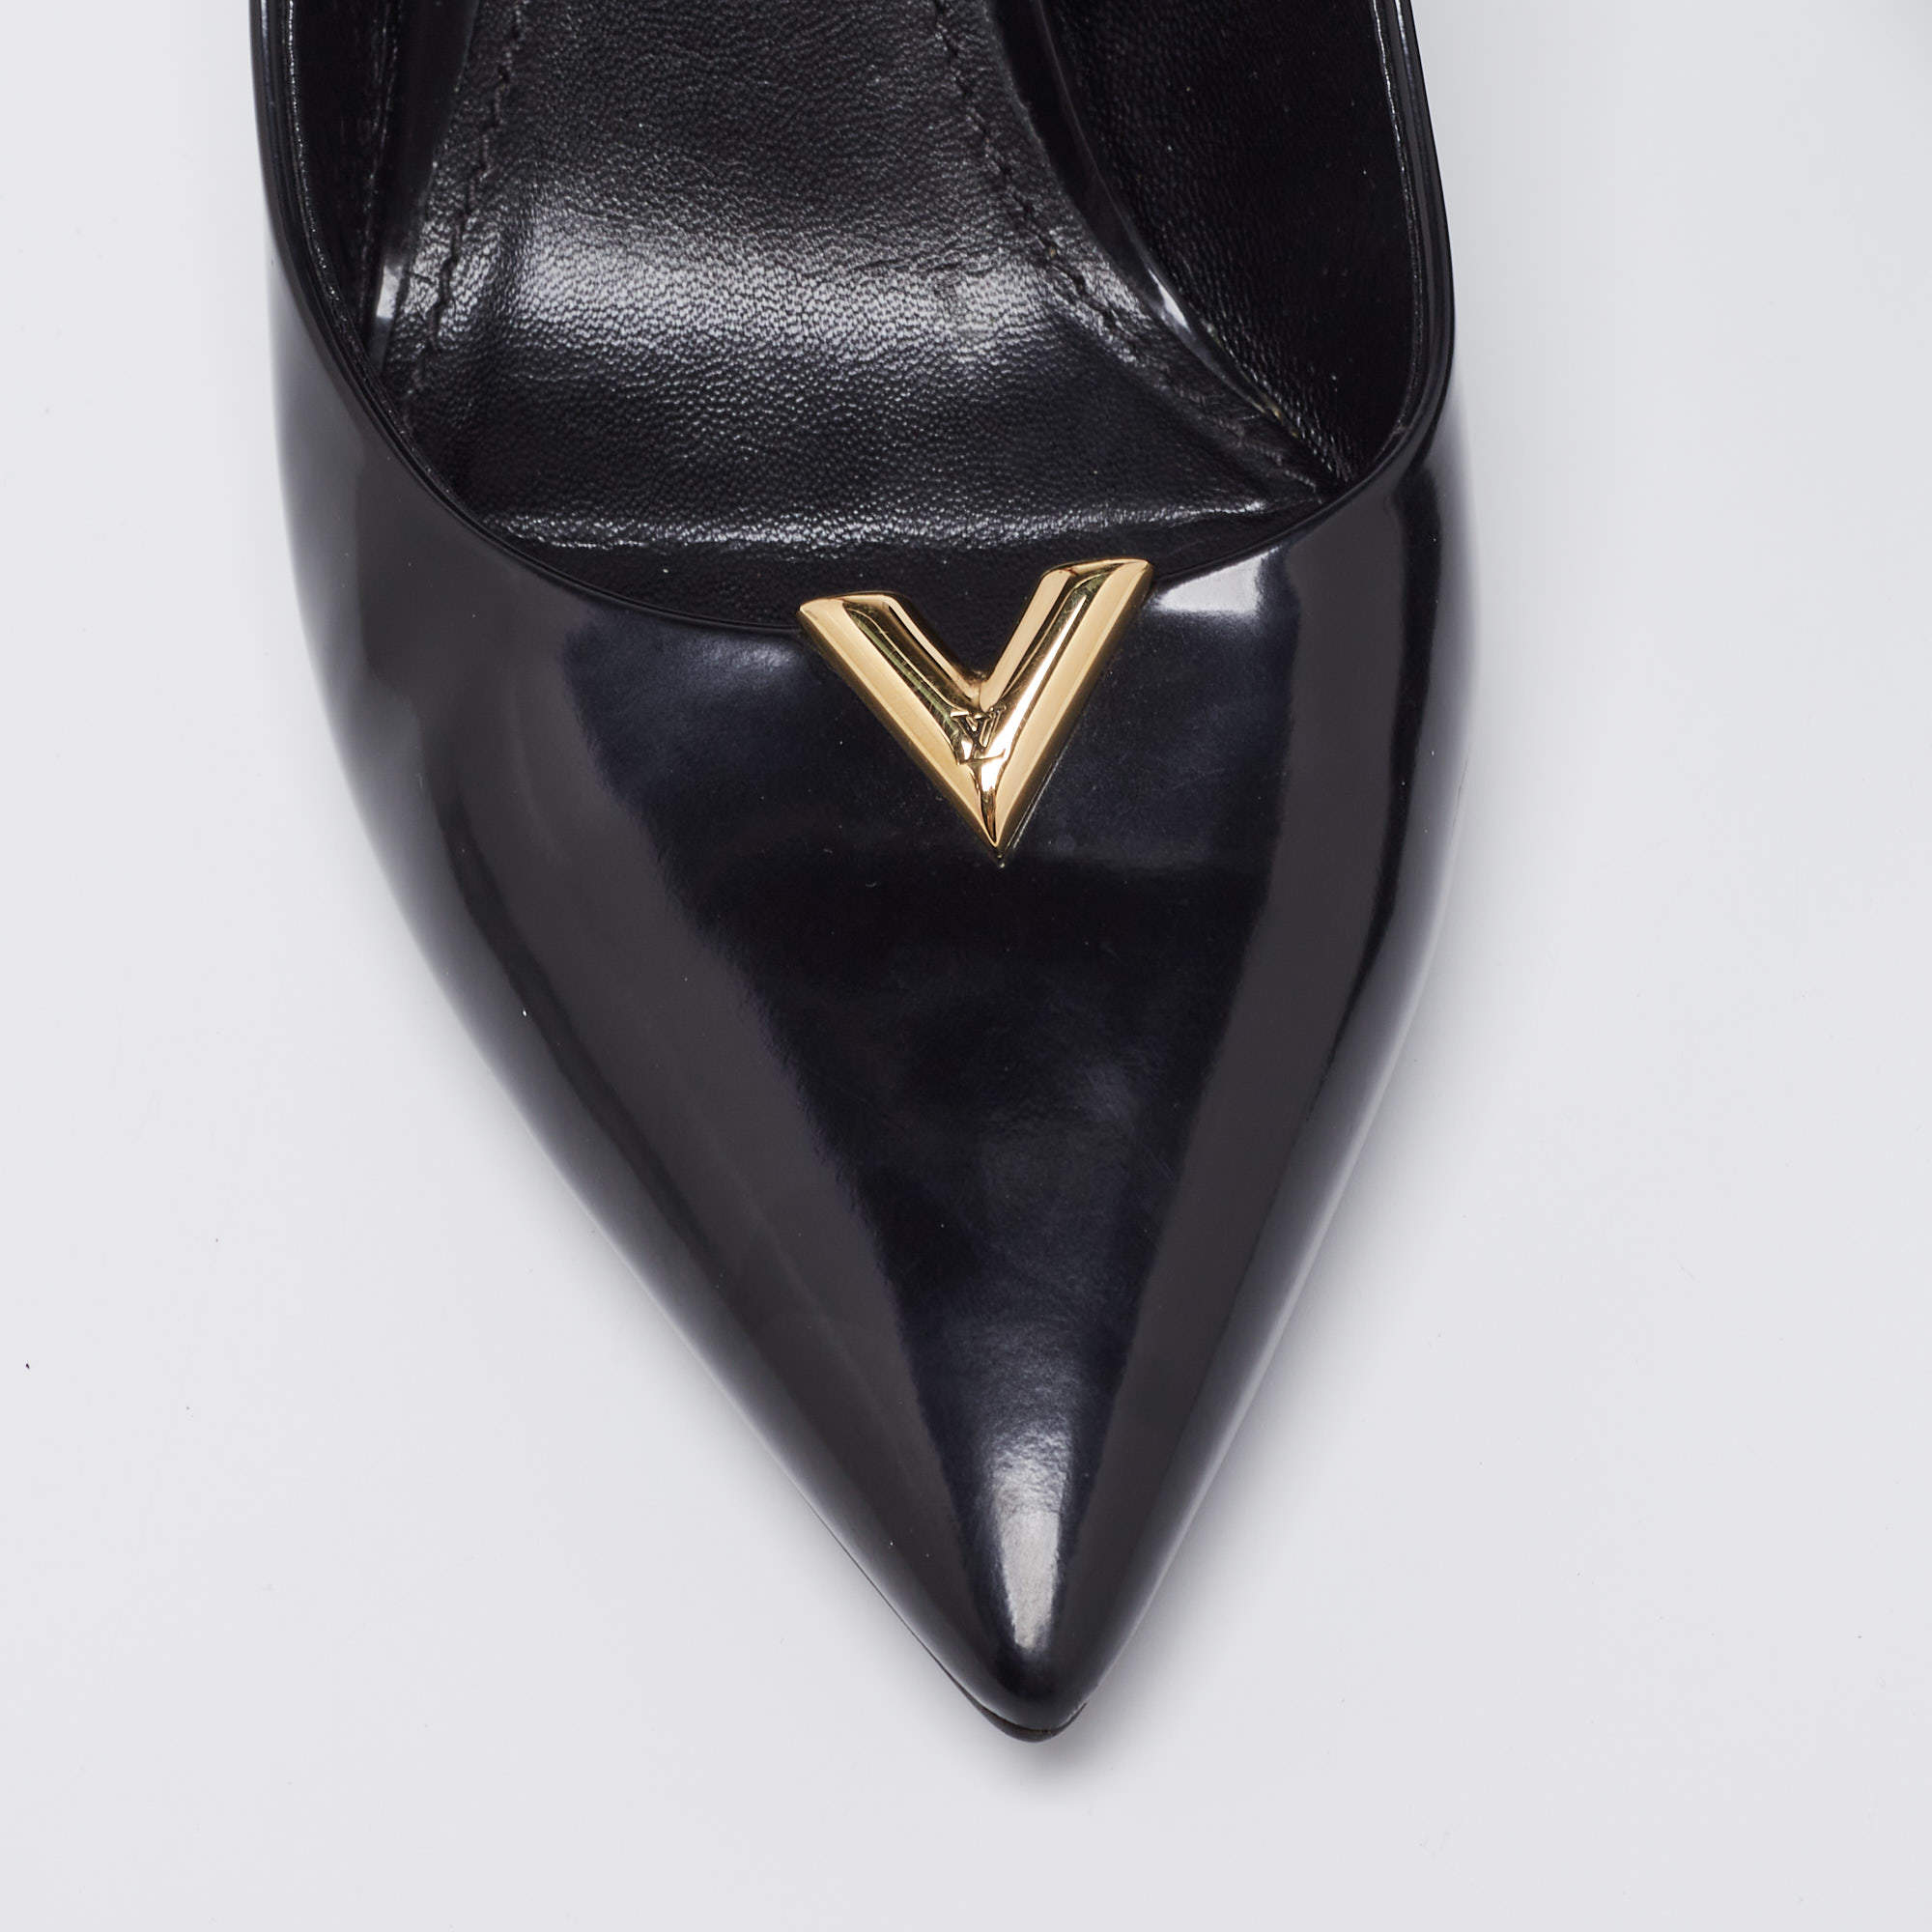 Louis Vuitton Black Leather Heartbreaker Pointed Toe Pumps Size 41 Louis  Vuitton